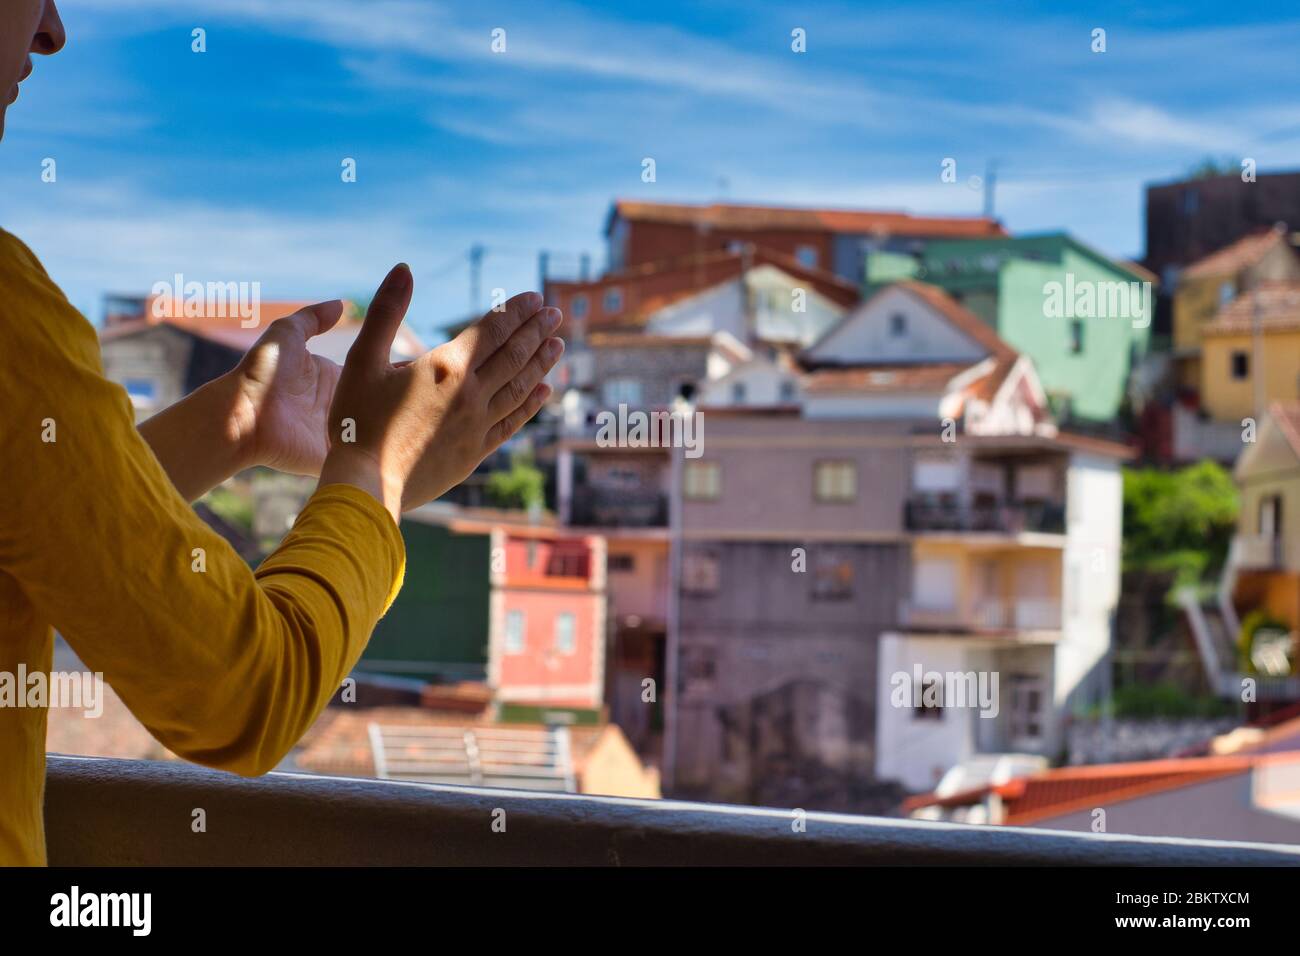 Giovane donna che le ha aggrappato le mani sul balcone per showi gratitudine a tutti gli operatori sanitari durante l'epidemia di coronavirus. Molte case colorate. Foto Stock